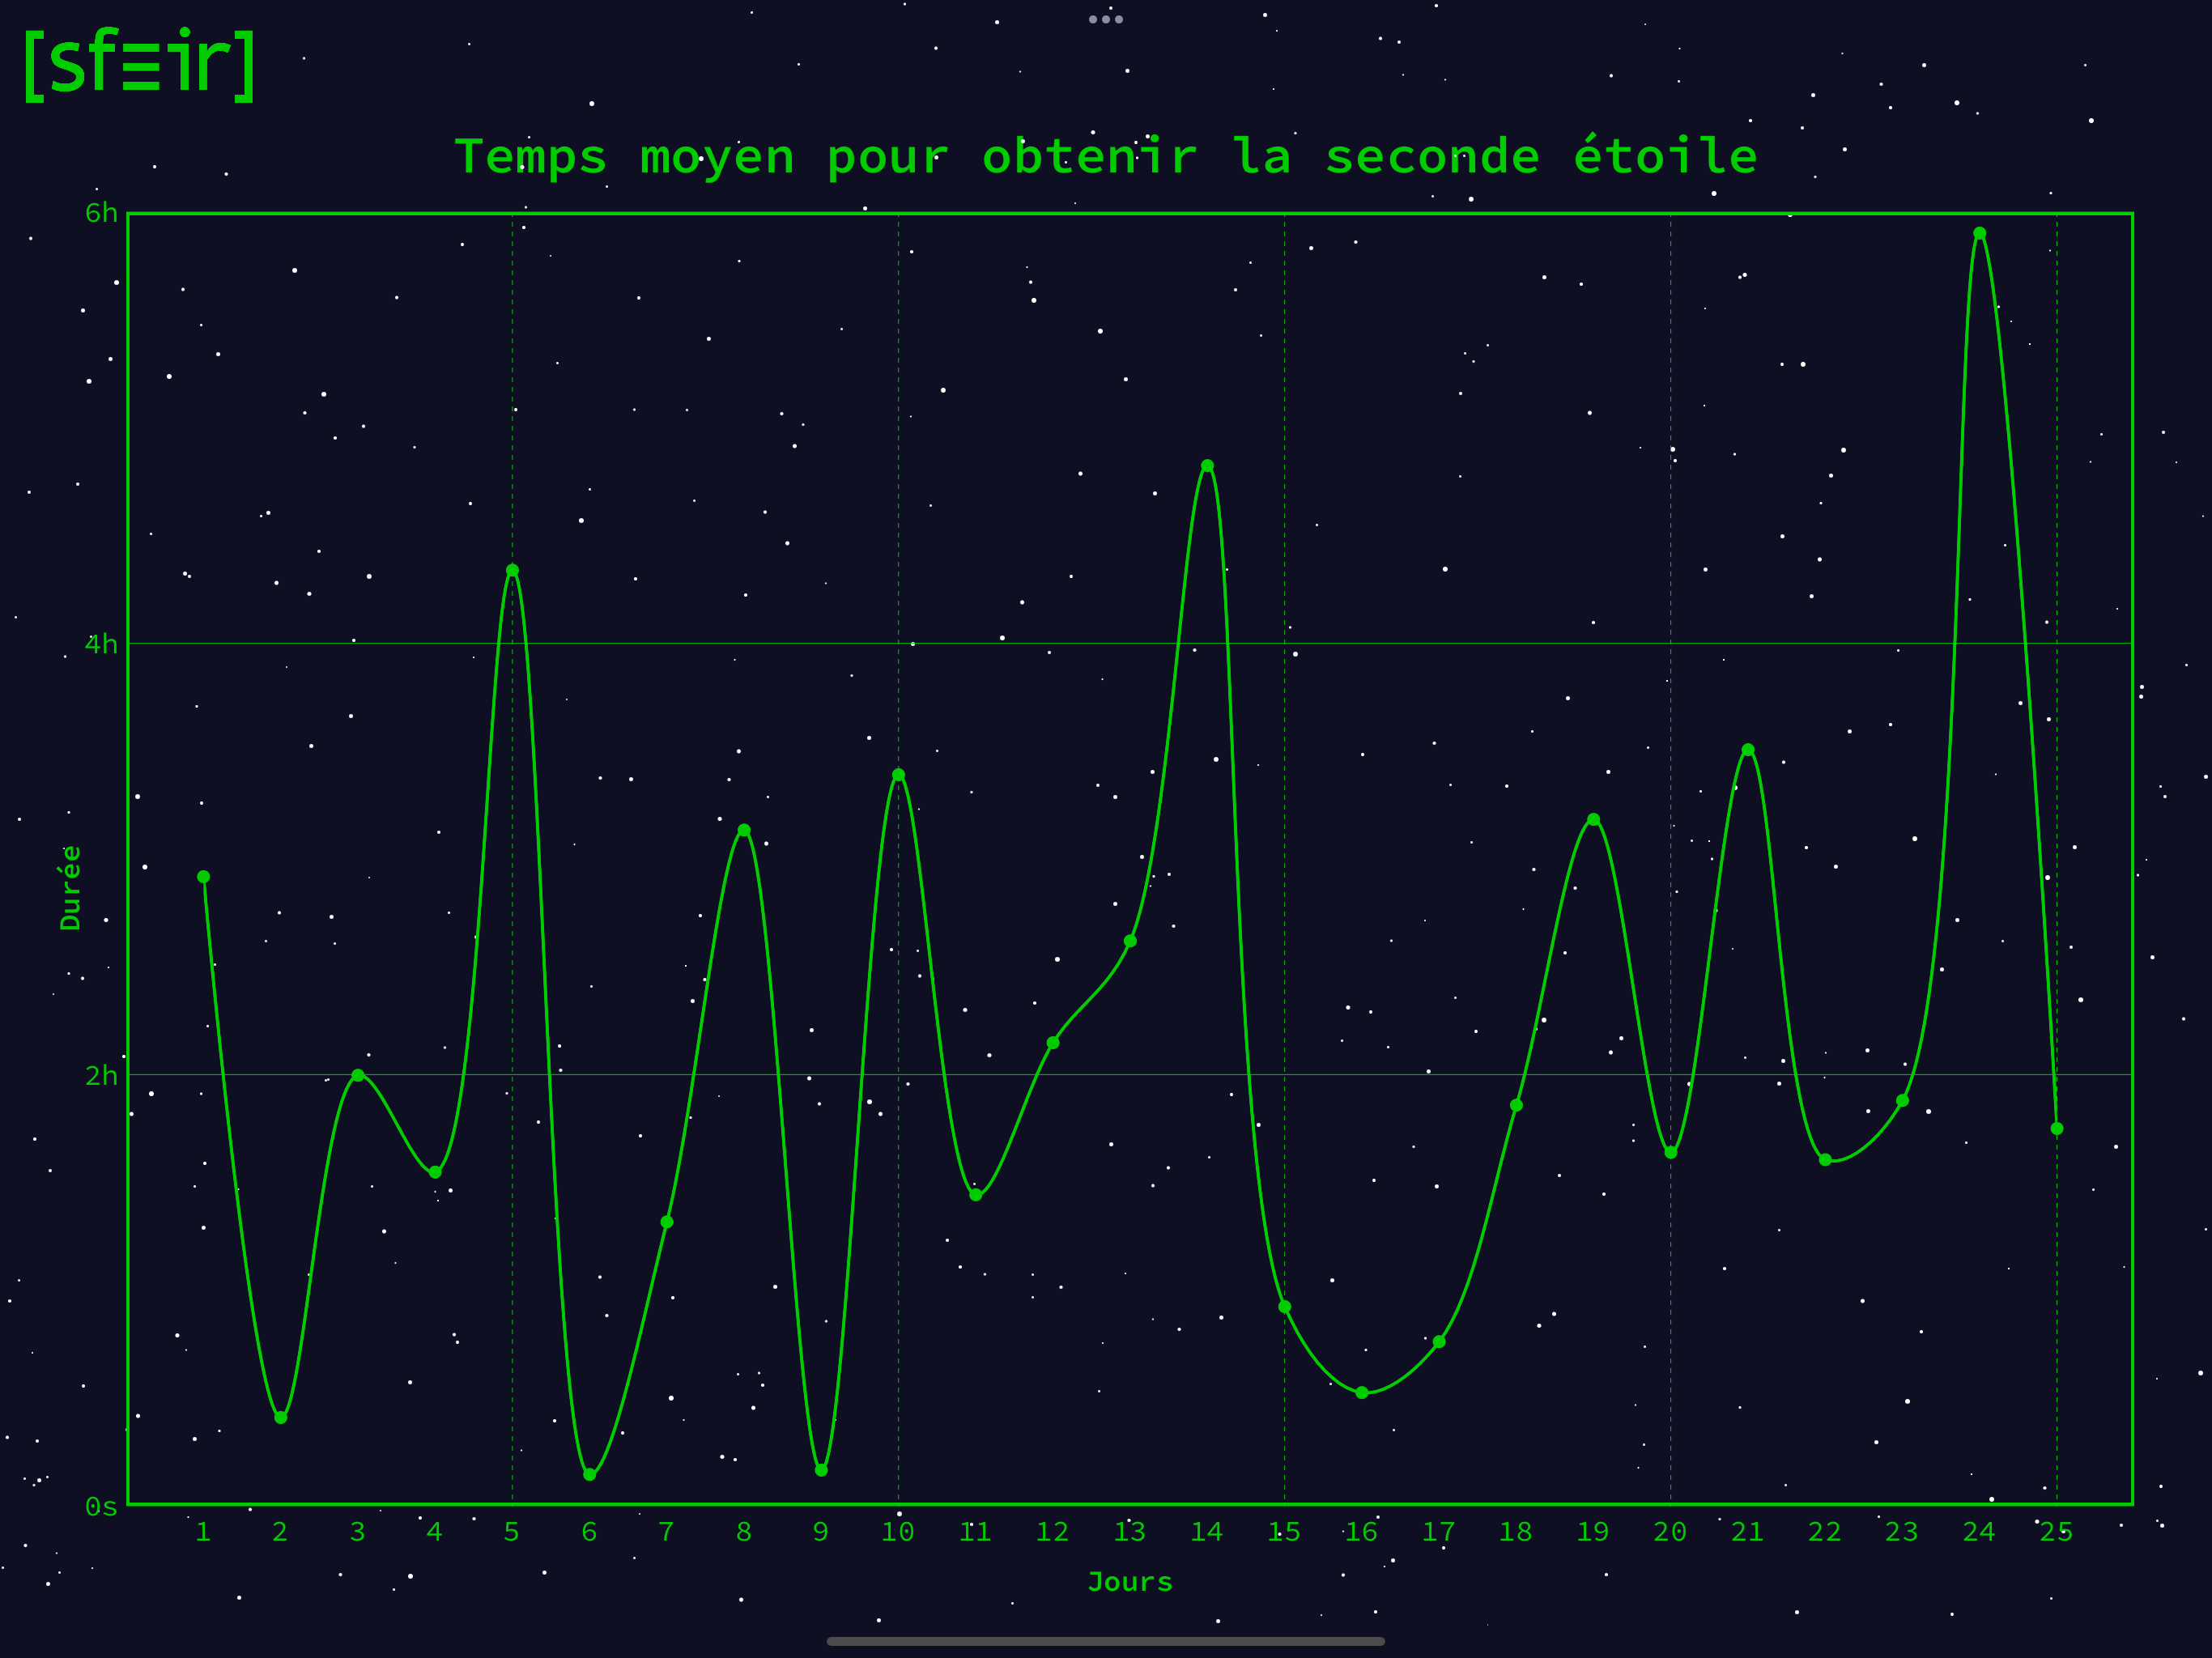 Graphe représentant le temps moyen pour obtenir la deuxième étoile de chaque jour dans ses 24h